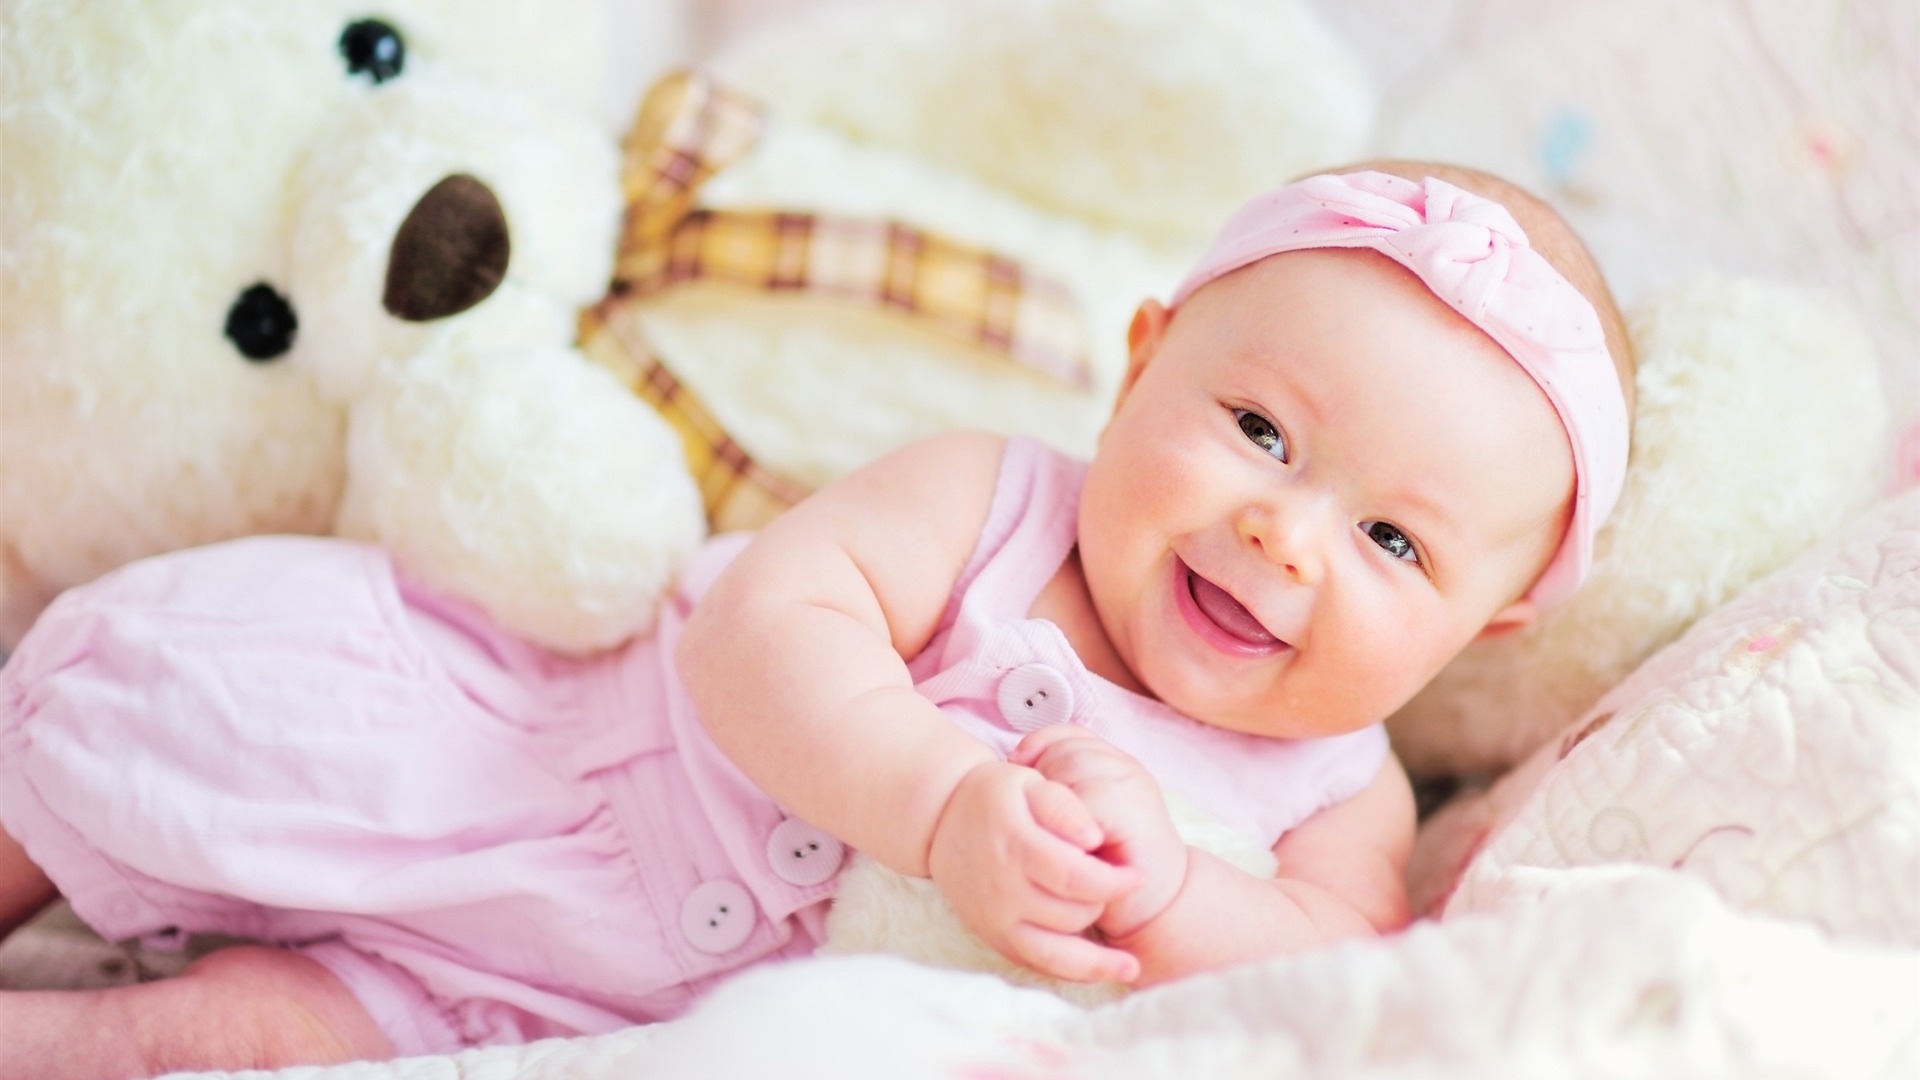 Cute baby with teddy bear photo